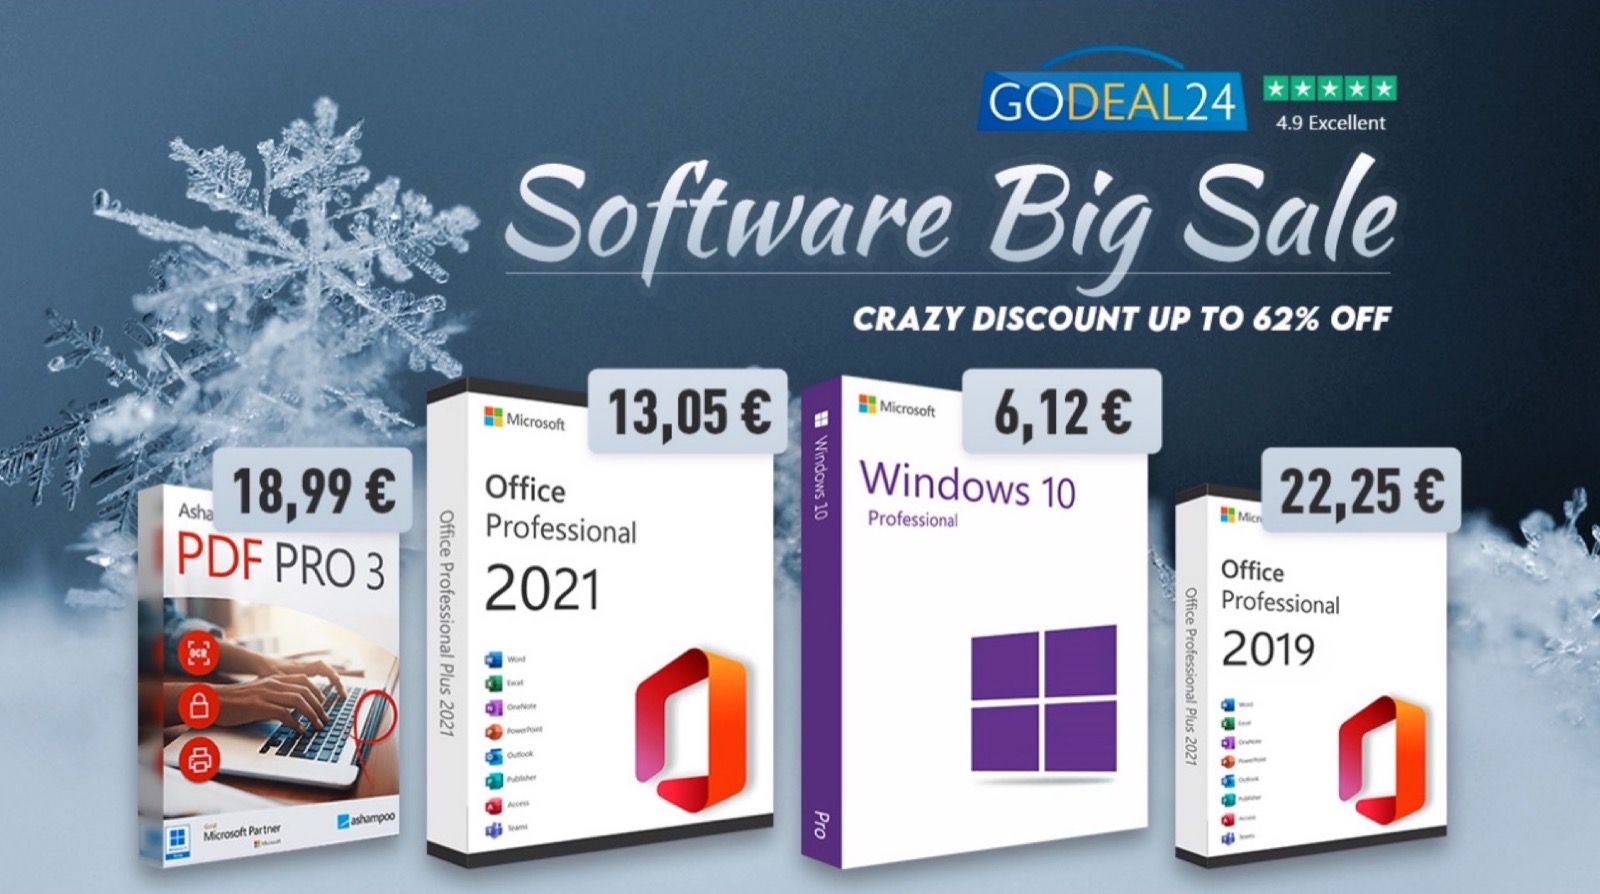 Sconti Godeal24 con licenze Windows, Office e altro a partire da 6 €